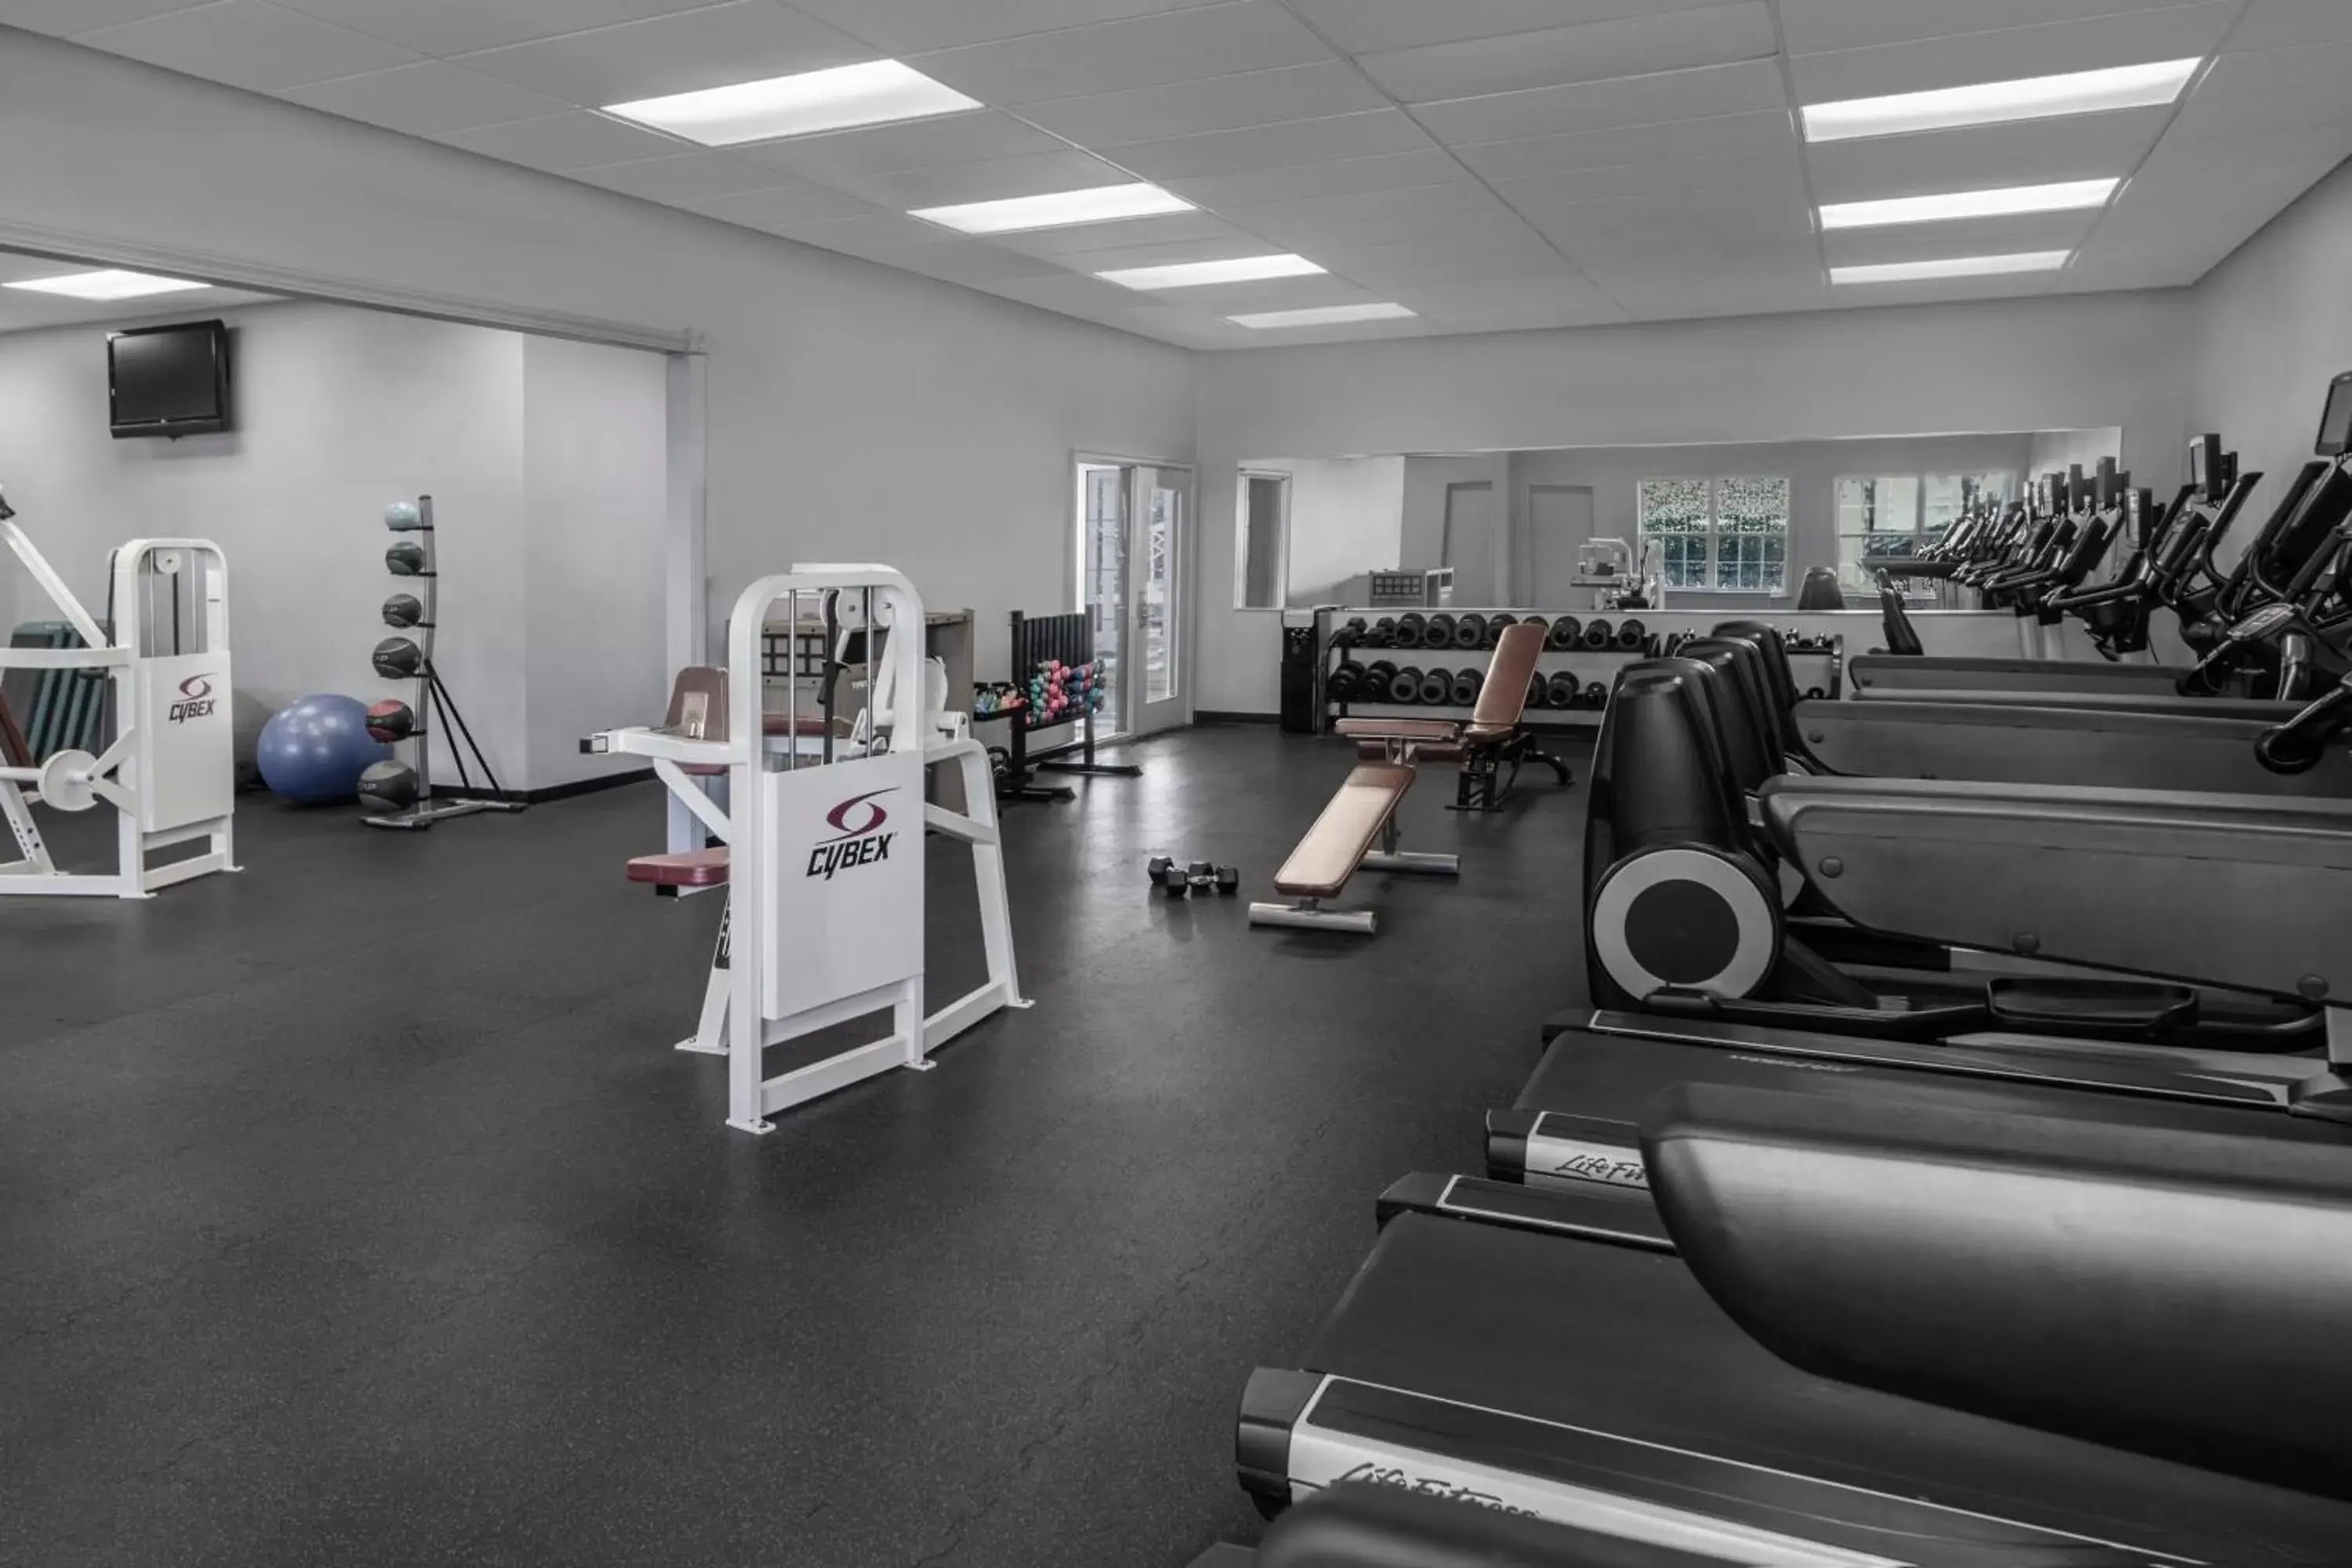 Fitness centre/facilities, Fitness Center/Facilities in Marriott's Fairway Villas